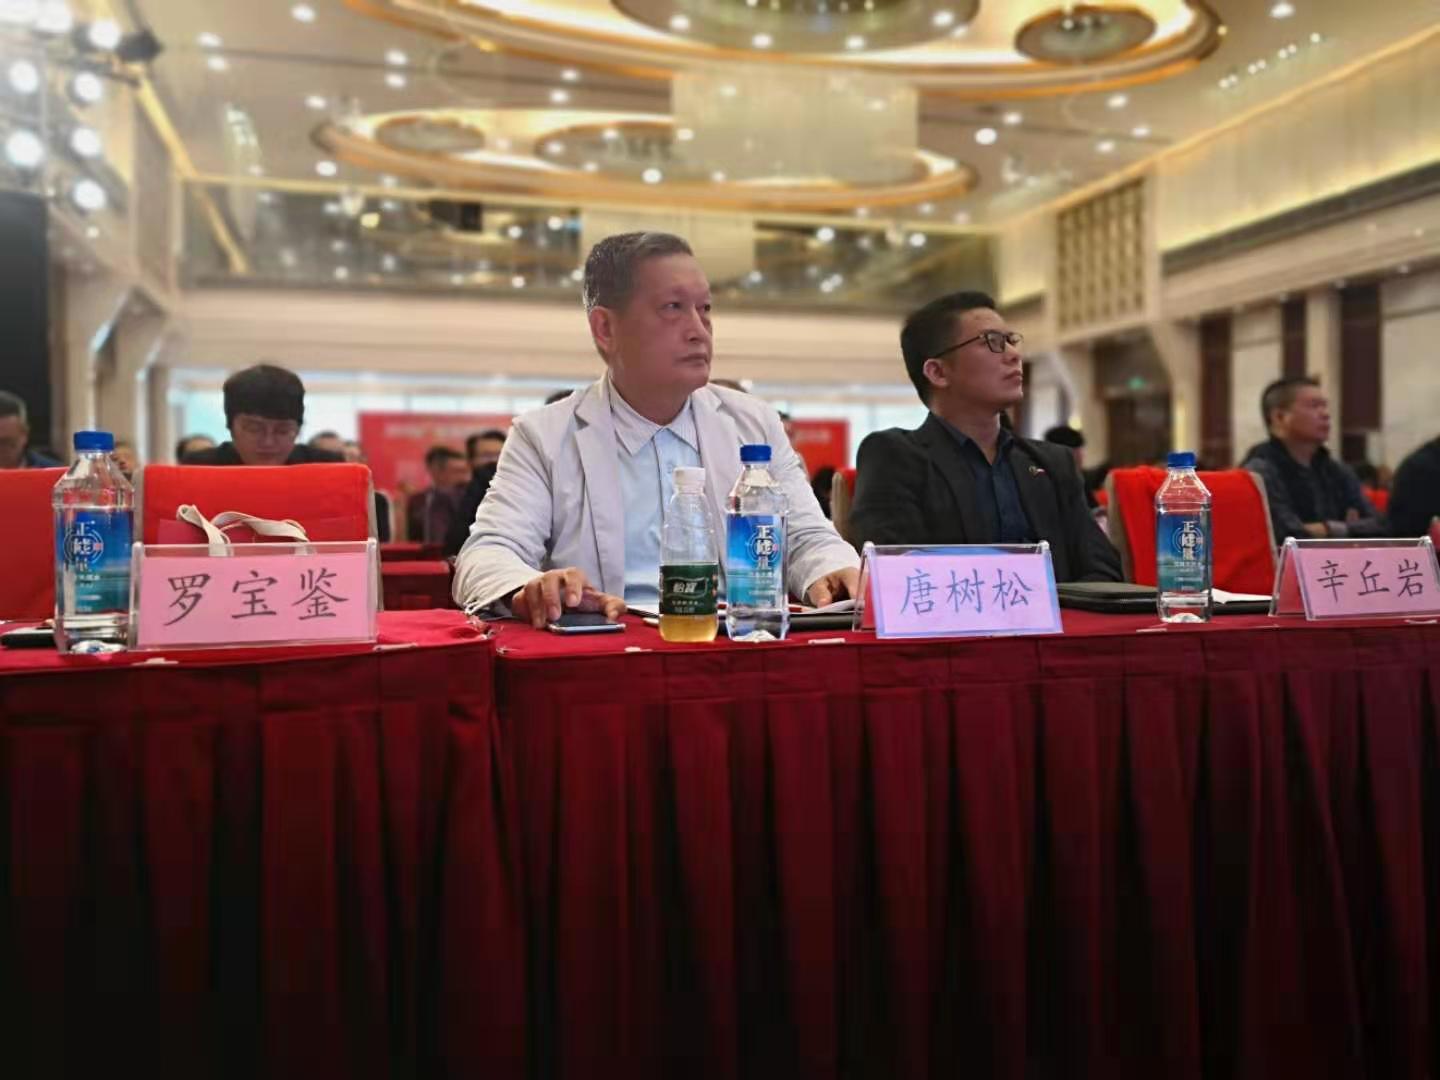 热烈祝贺：广州市赛思达机械设备有限公司荣获“改革开放40年广东省烘焙行业杰出企业”